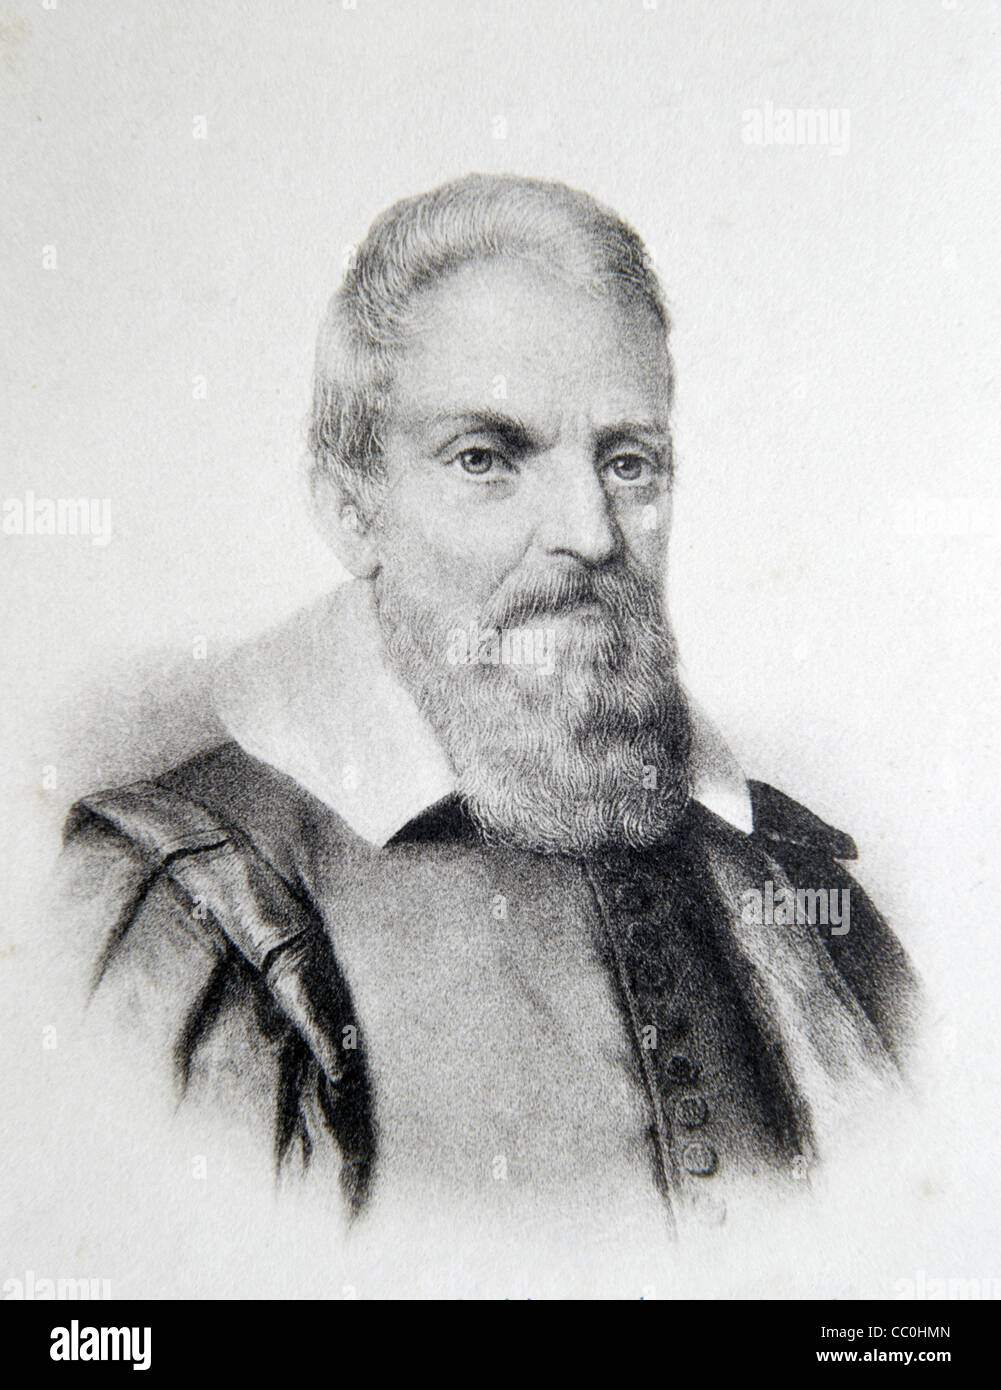 Ritratto di Galileo Galilei (1564-1642) Fiscicista, matematico, astronomo e filosofo italiano. Illustrazione o incisione vintage Foto Stock